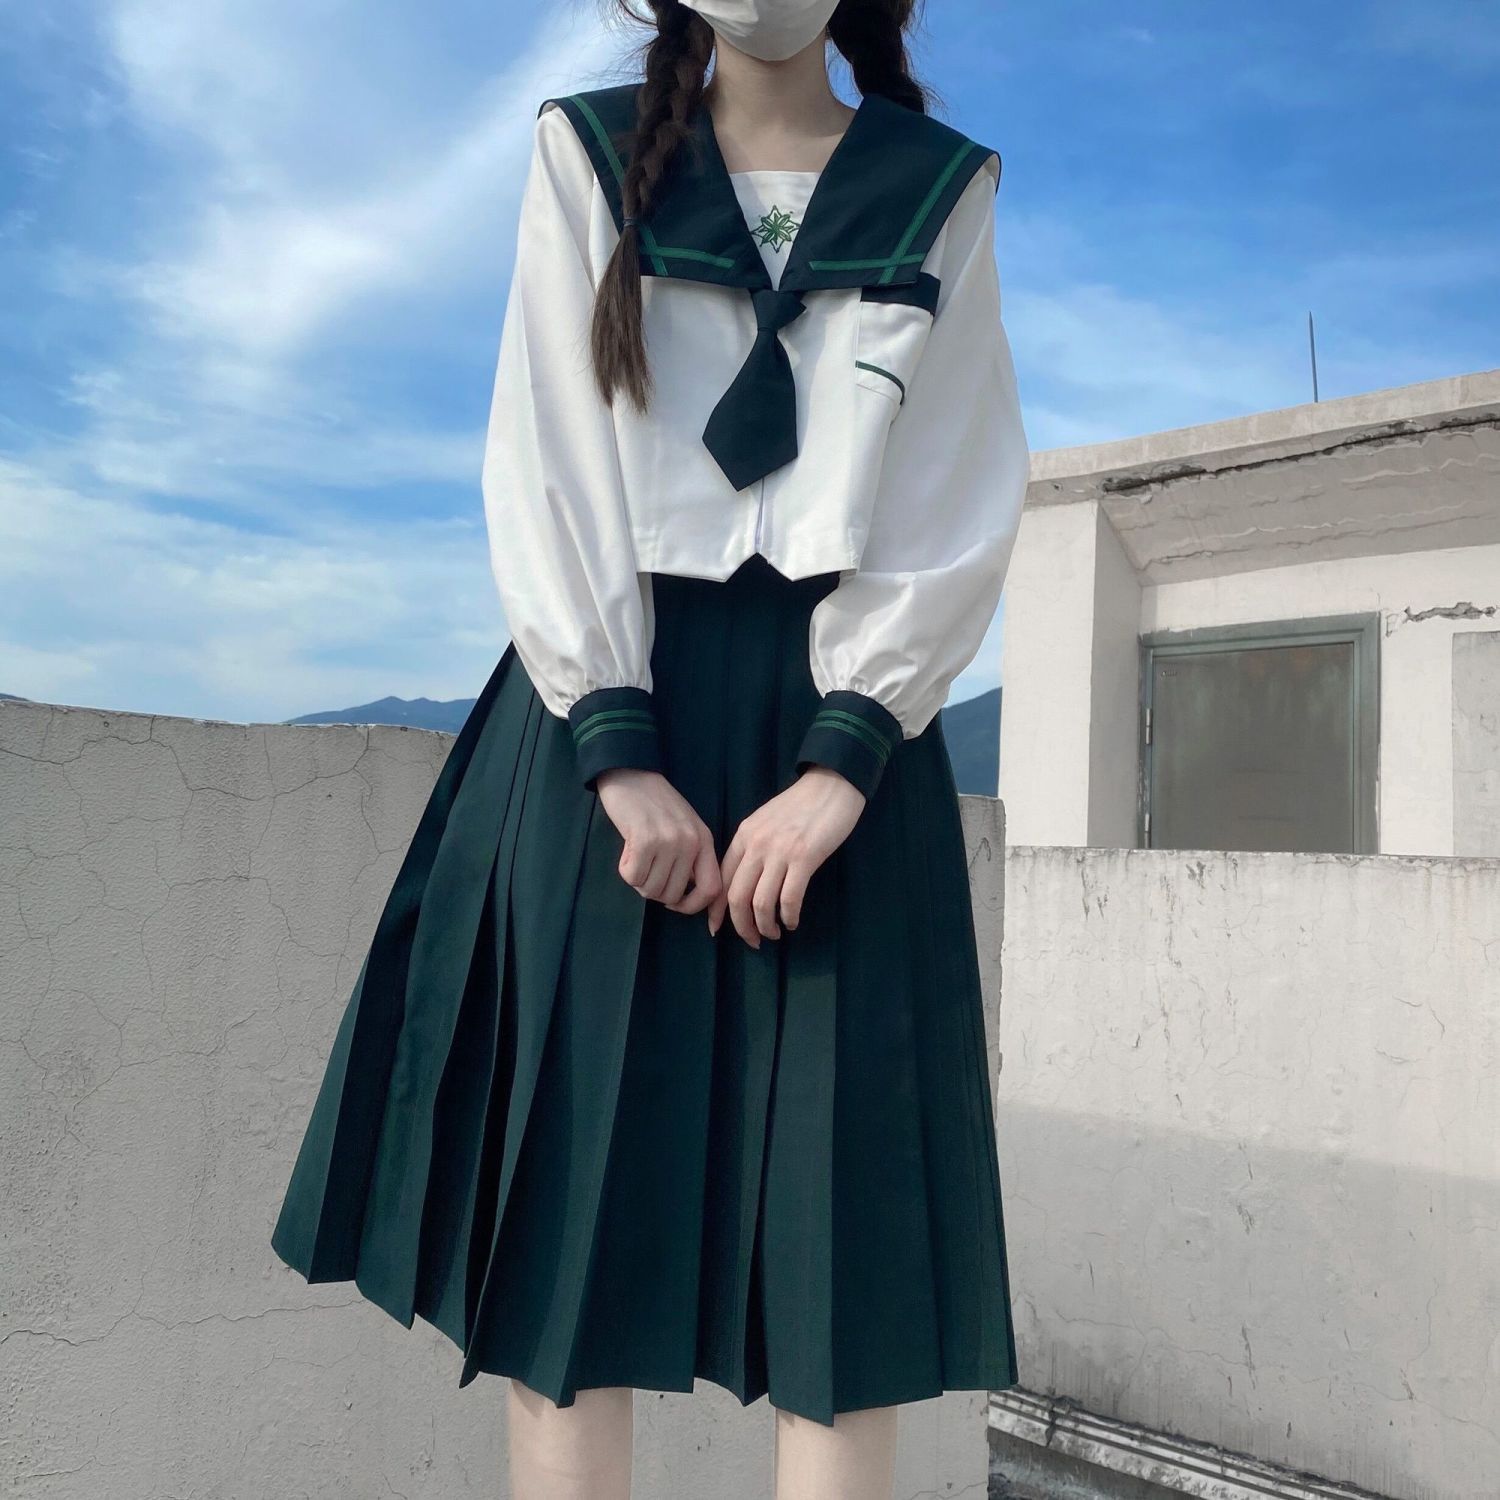 Váy đồng phục học sinh Nhật Bản  JK Brand ANYE được tặng kèm nơ JK  Seifuku dongthao  Shopee Việt Nam